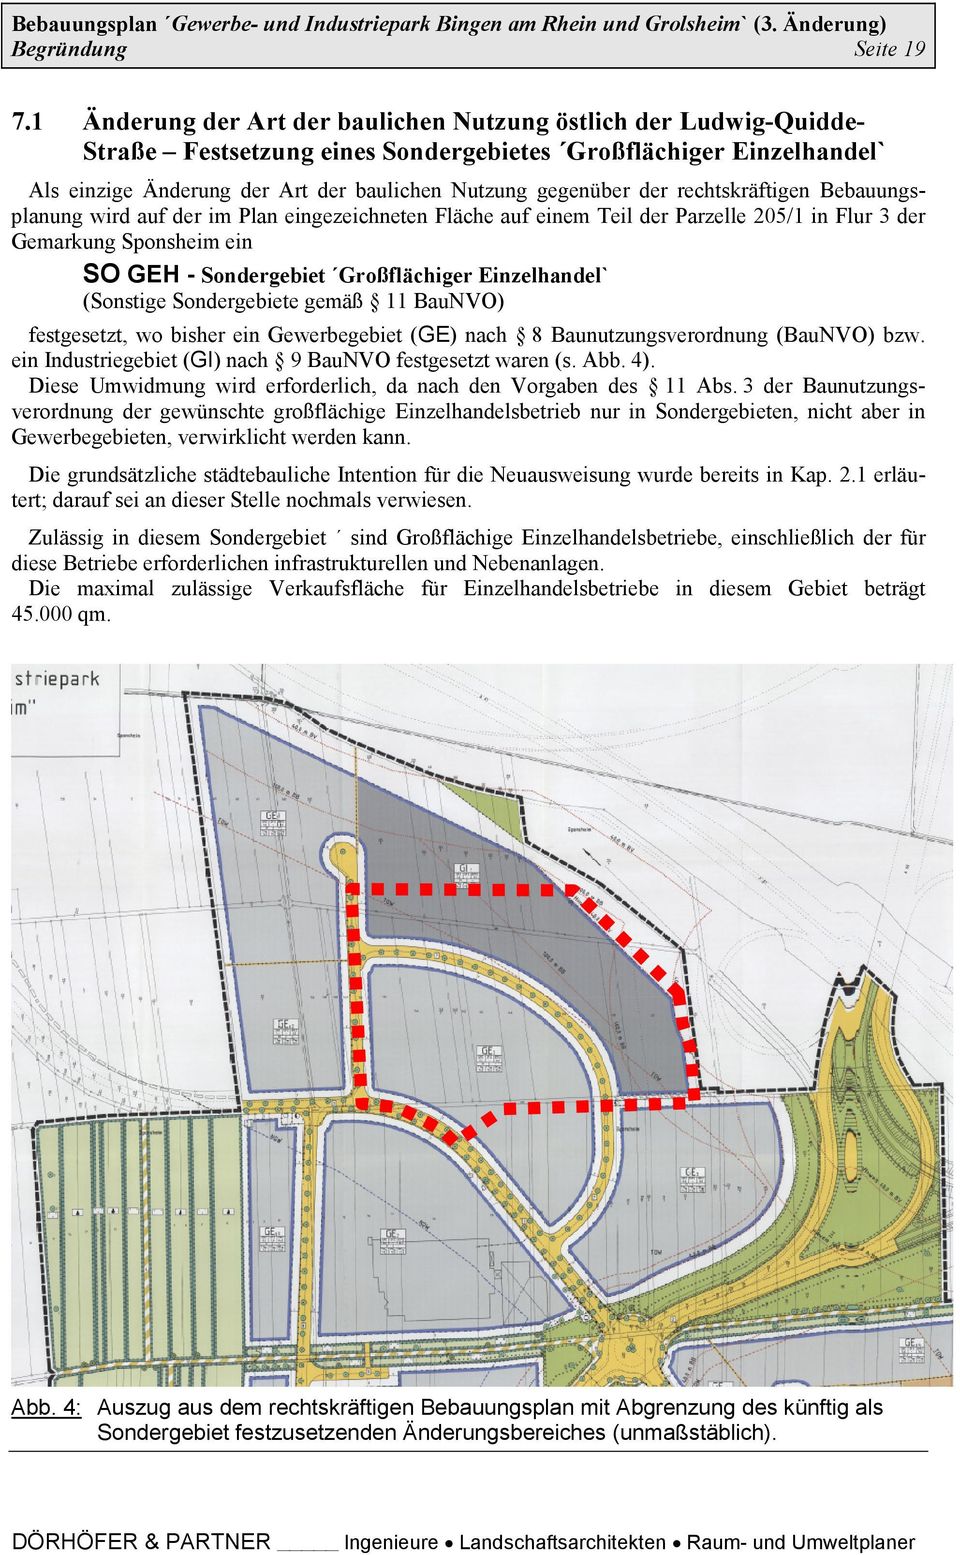 der rechtskräftigen Bebauungsplanung wird auf der im Plan eingezeichneten Fläche auf einem Teil der Parzelle 205/1 in Flur 3 der Gemarkung Sponsheim ein SO GEH - Sondergebiet Großflächiger